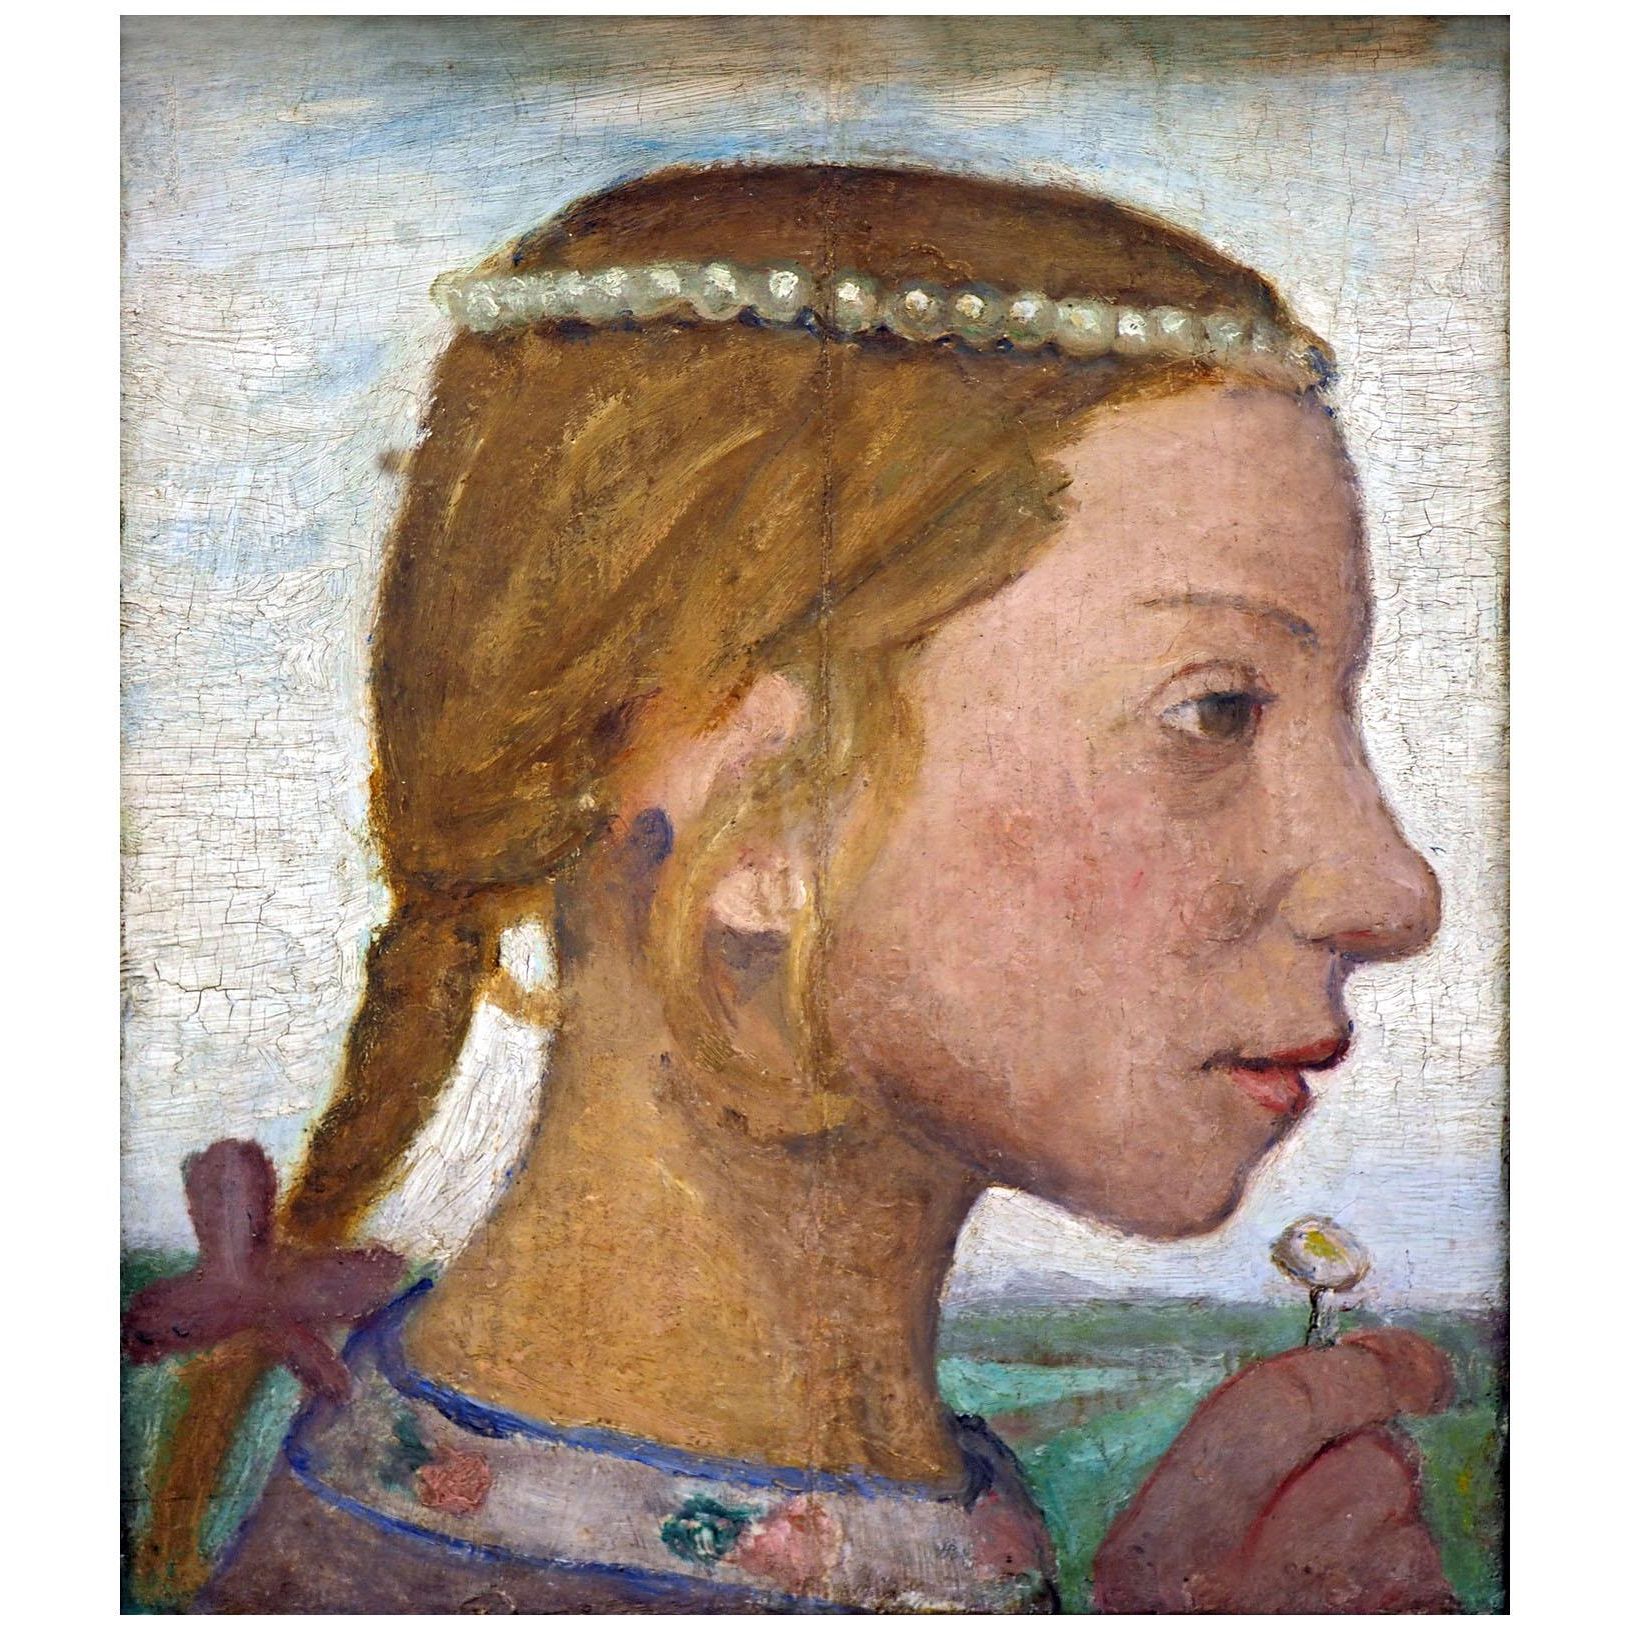 Paula Modersohn-Becker. Junges Mädchen. 1901. Hamburger Kunsthalle